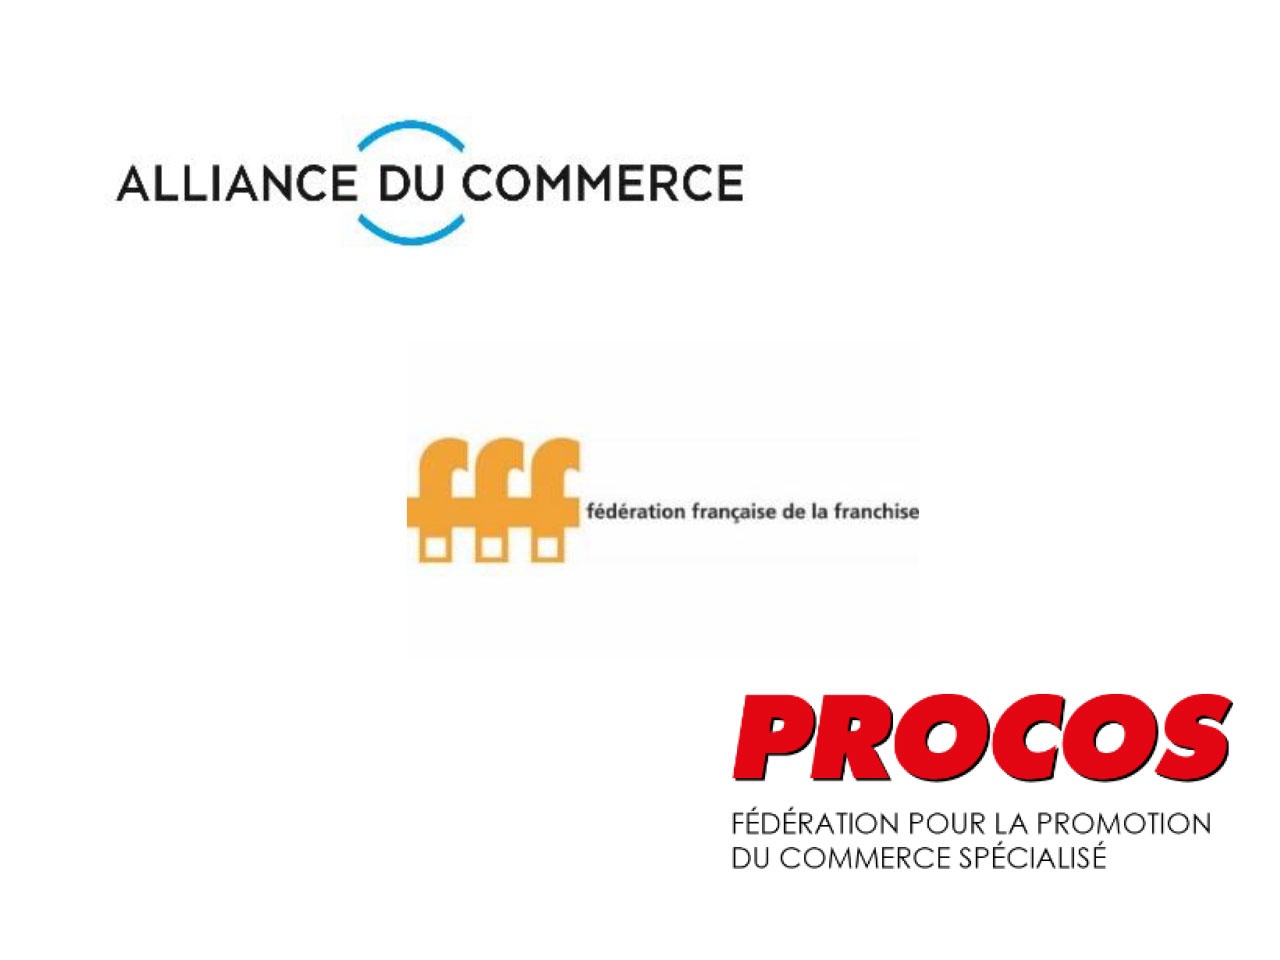 L’Alliance du Commerce, la Fédération de la Franchise et Procos demandent aux bailleurs  de plafonner l’indexation des loyers commerciaux à un maximum de + 3,5 % en 2023